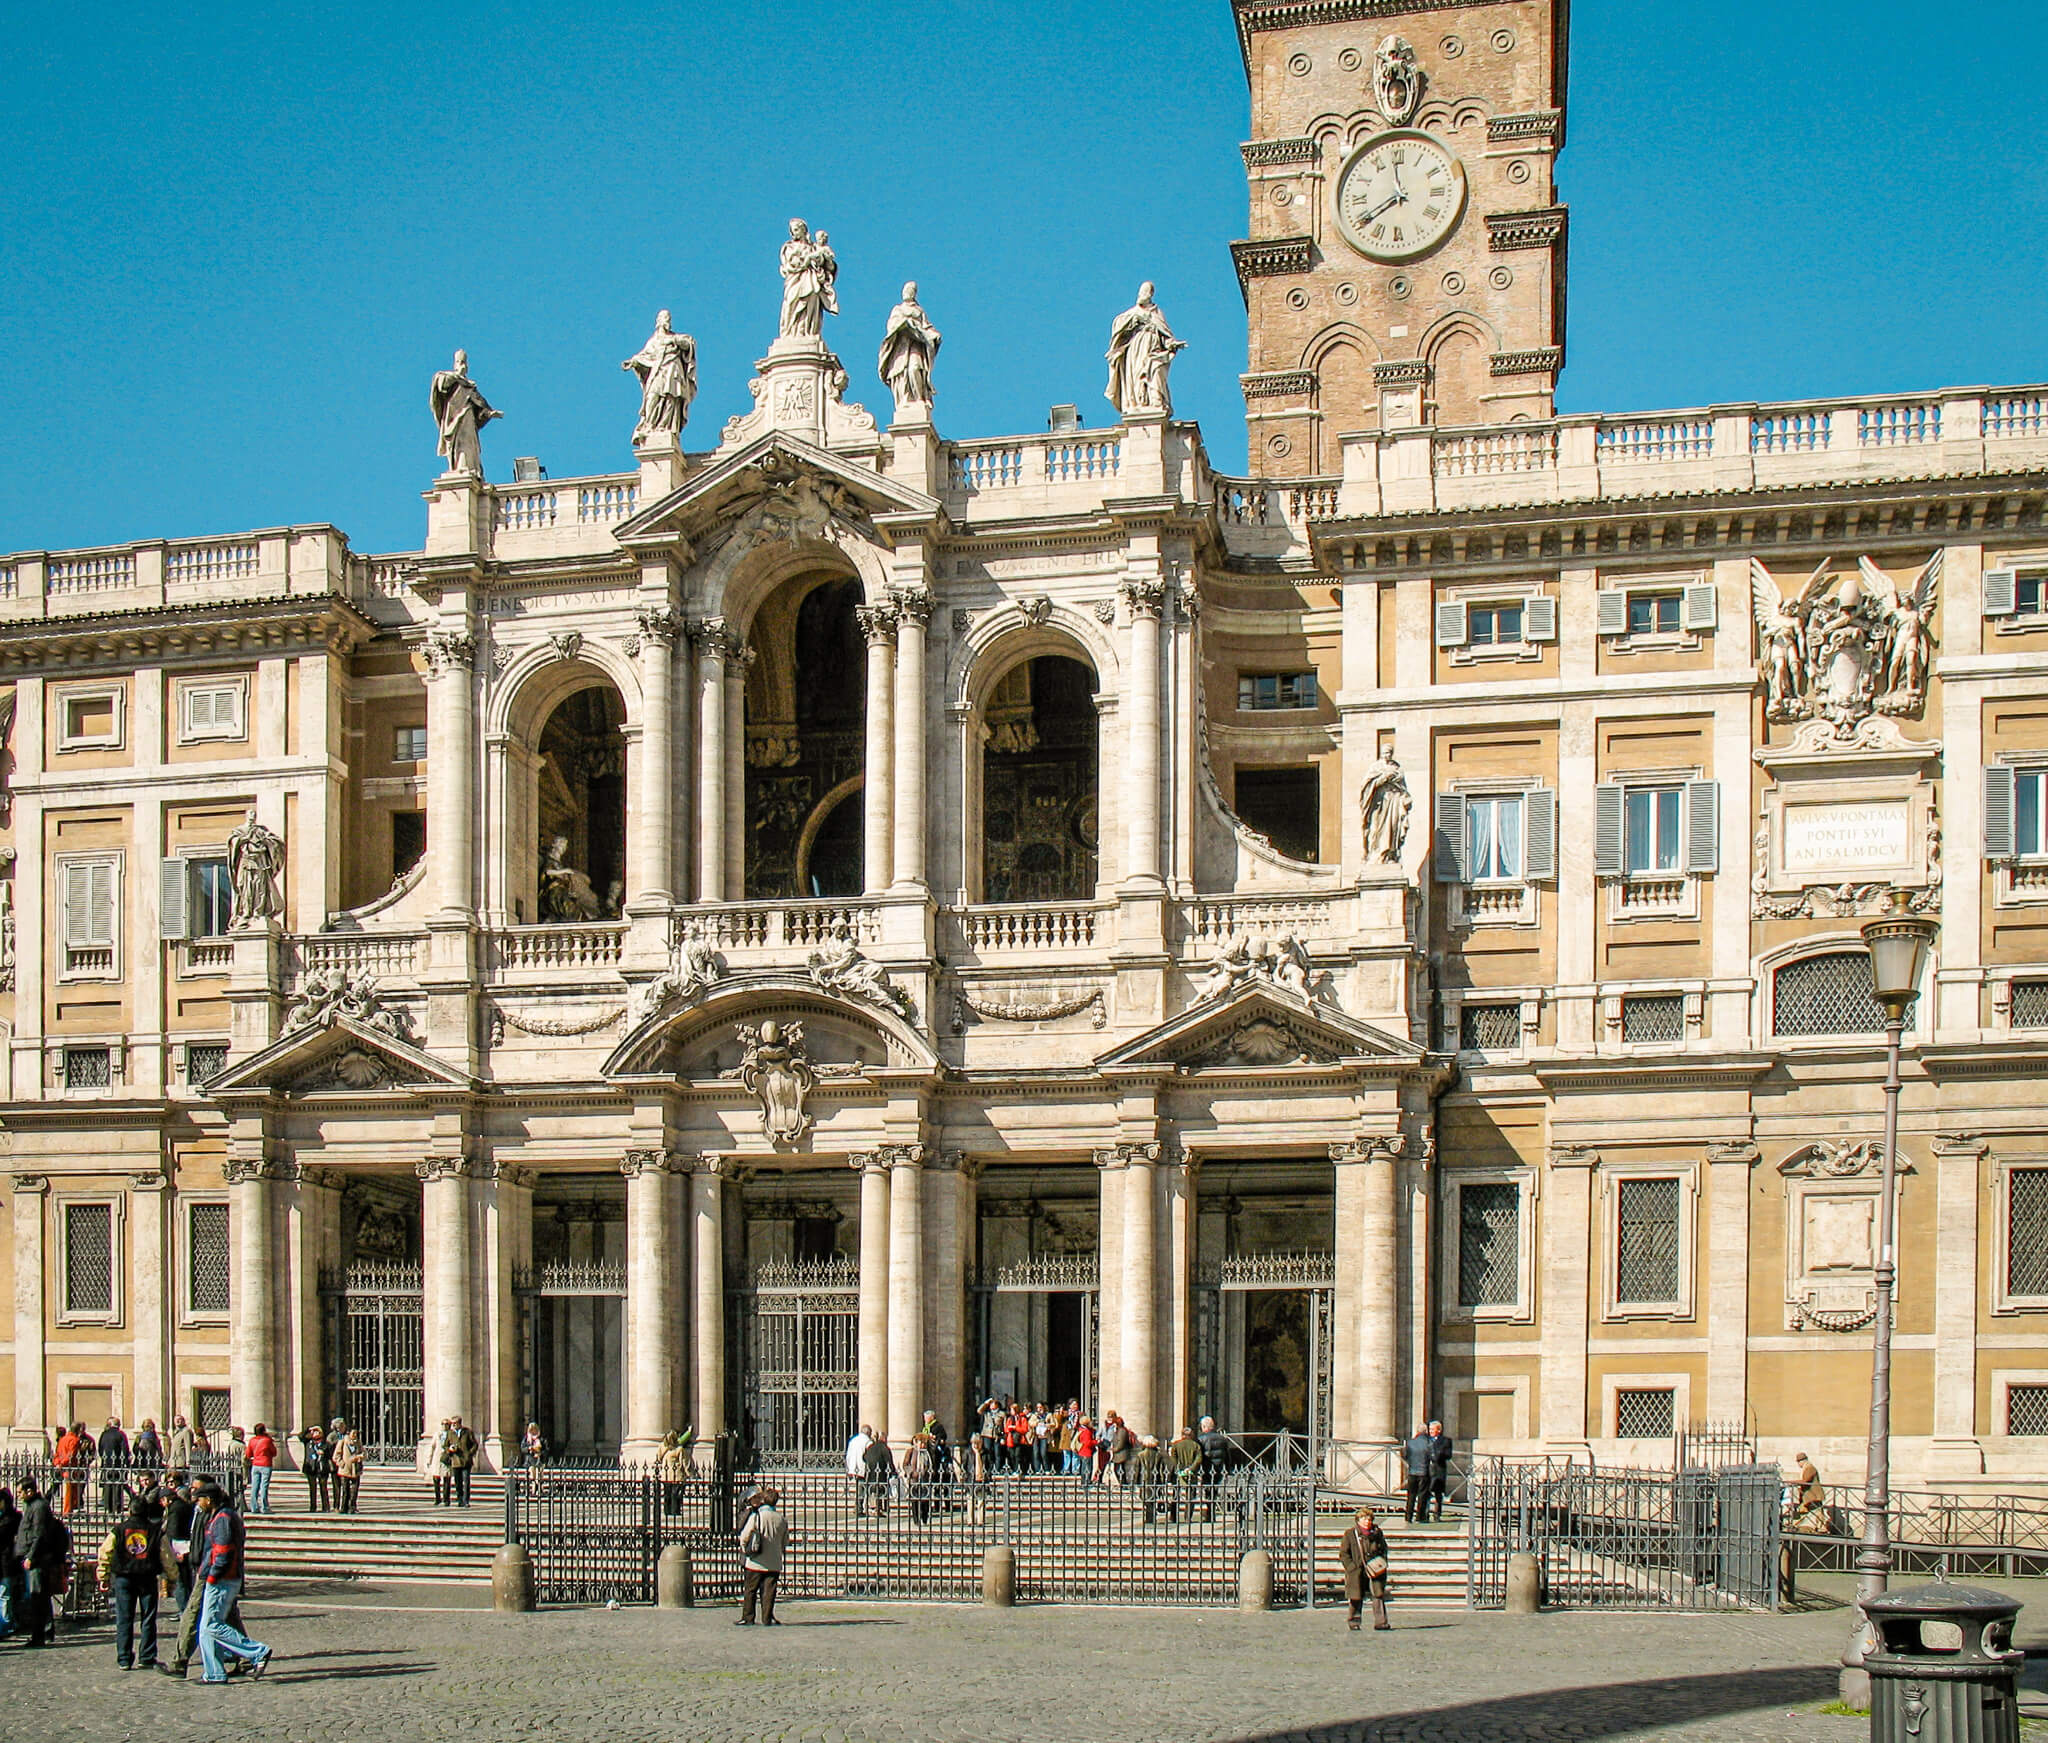 Basilica di Santa Maria Maggiore in Rome